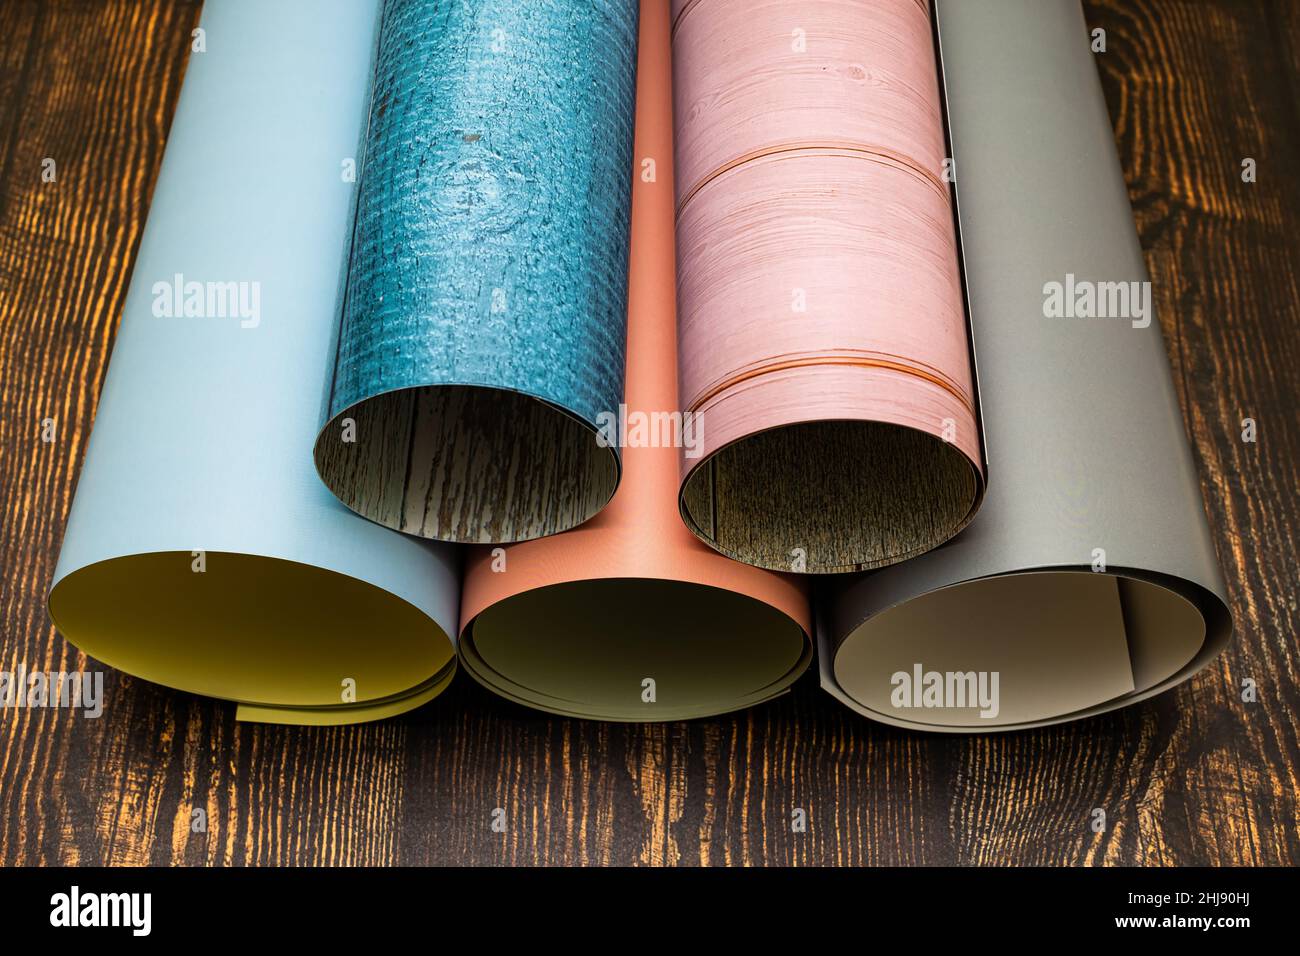 Rolled farbige Papierrolle als Photophon verwendet. Hochwertige Fotos Stockfoto